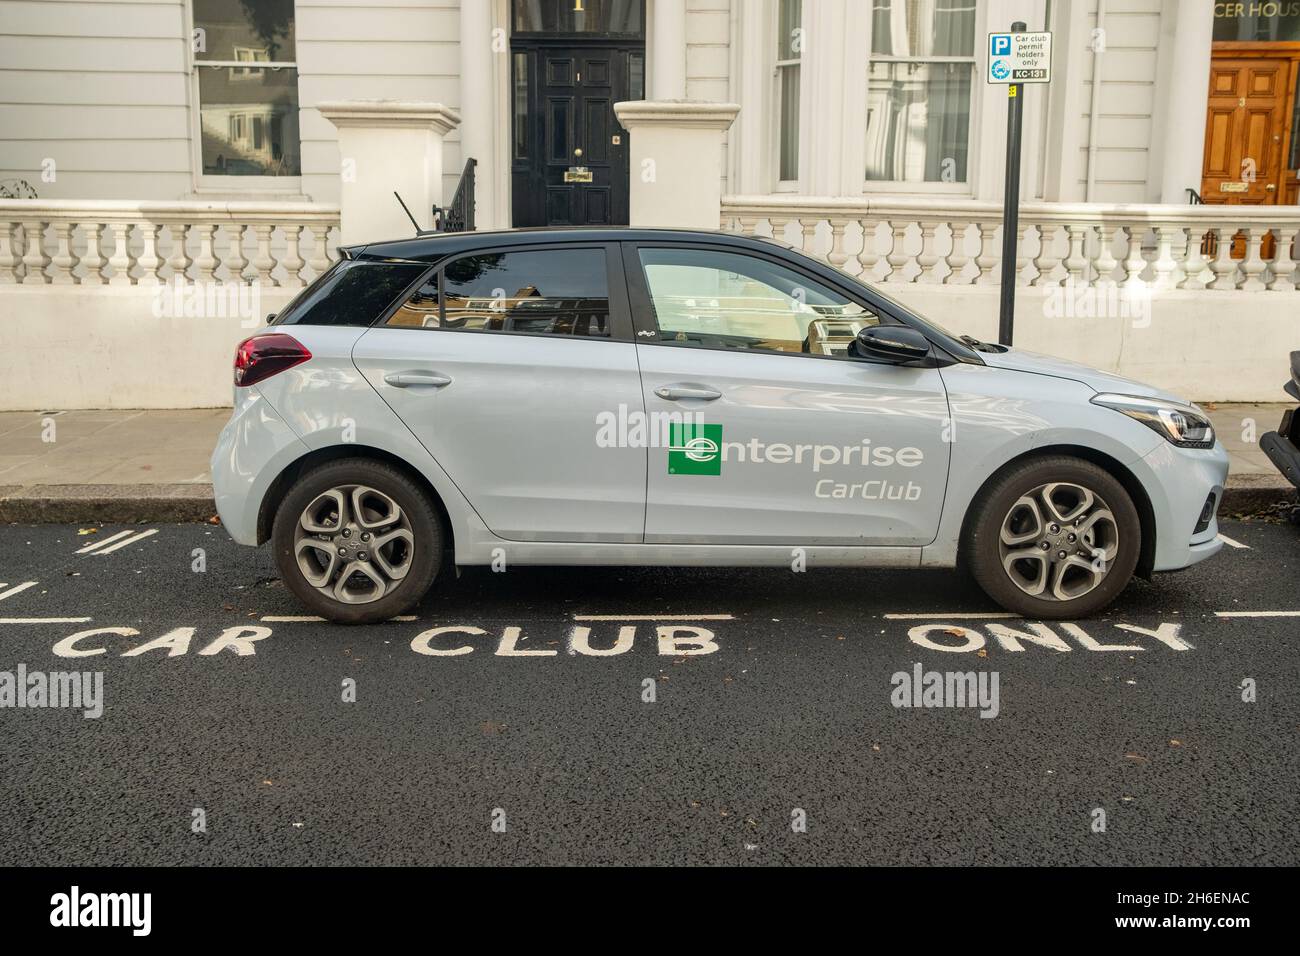 Londres - novembre 2021 : voiture Enterprise car Club garée dans la baie de stationnement désignée sur la rue London Banque D'Images